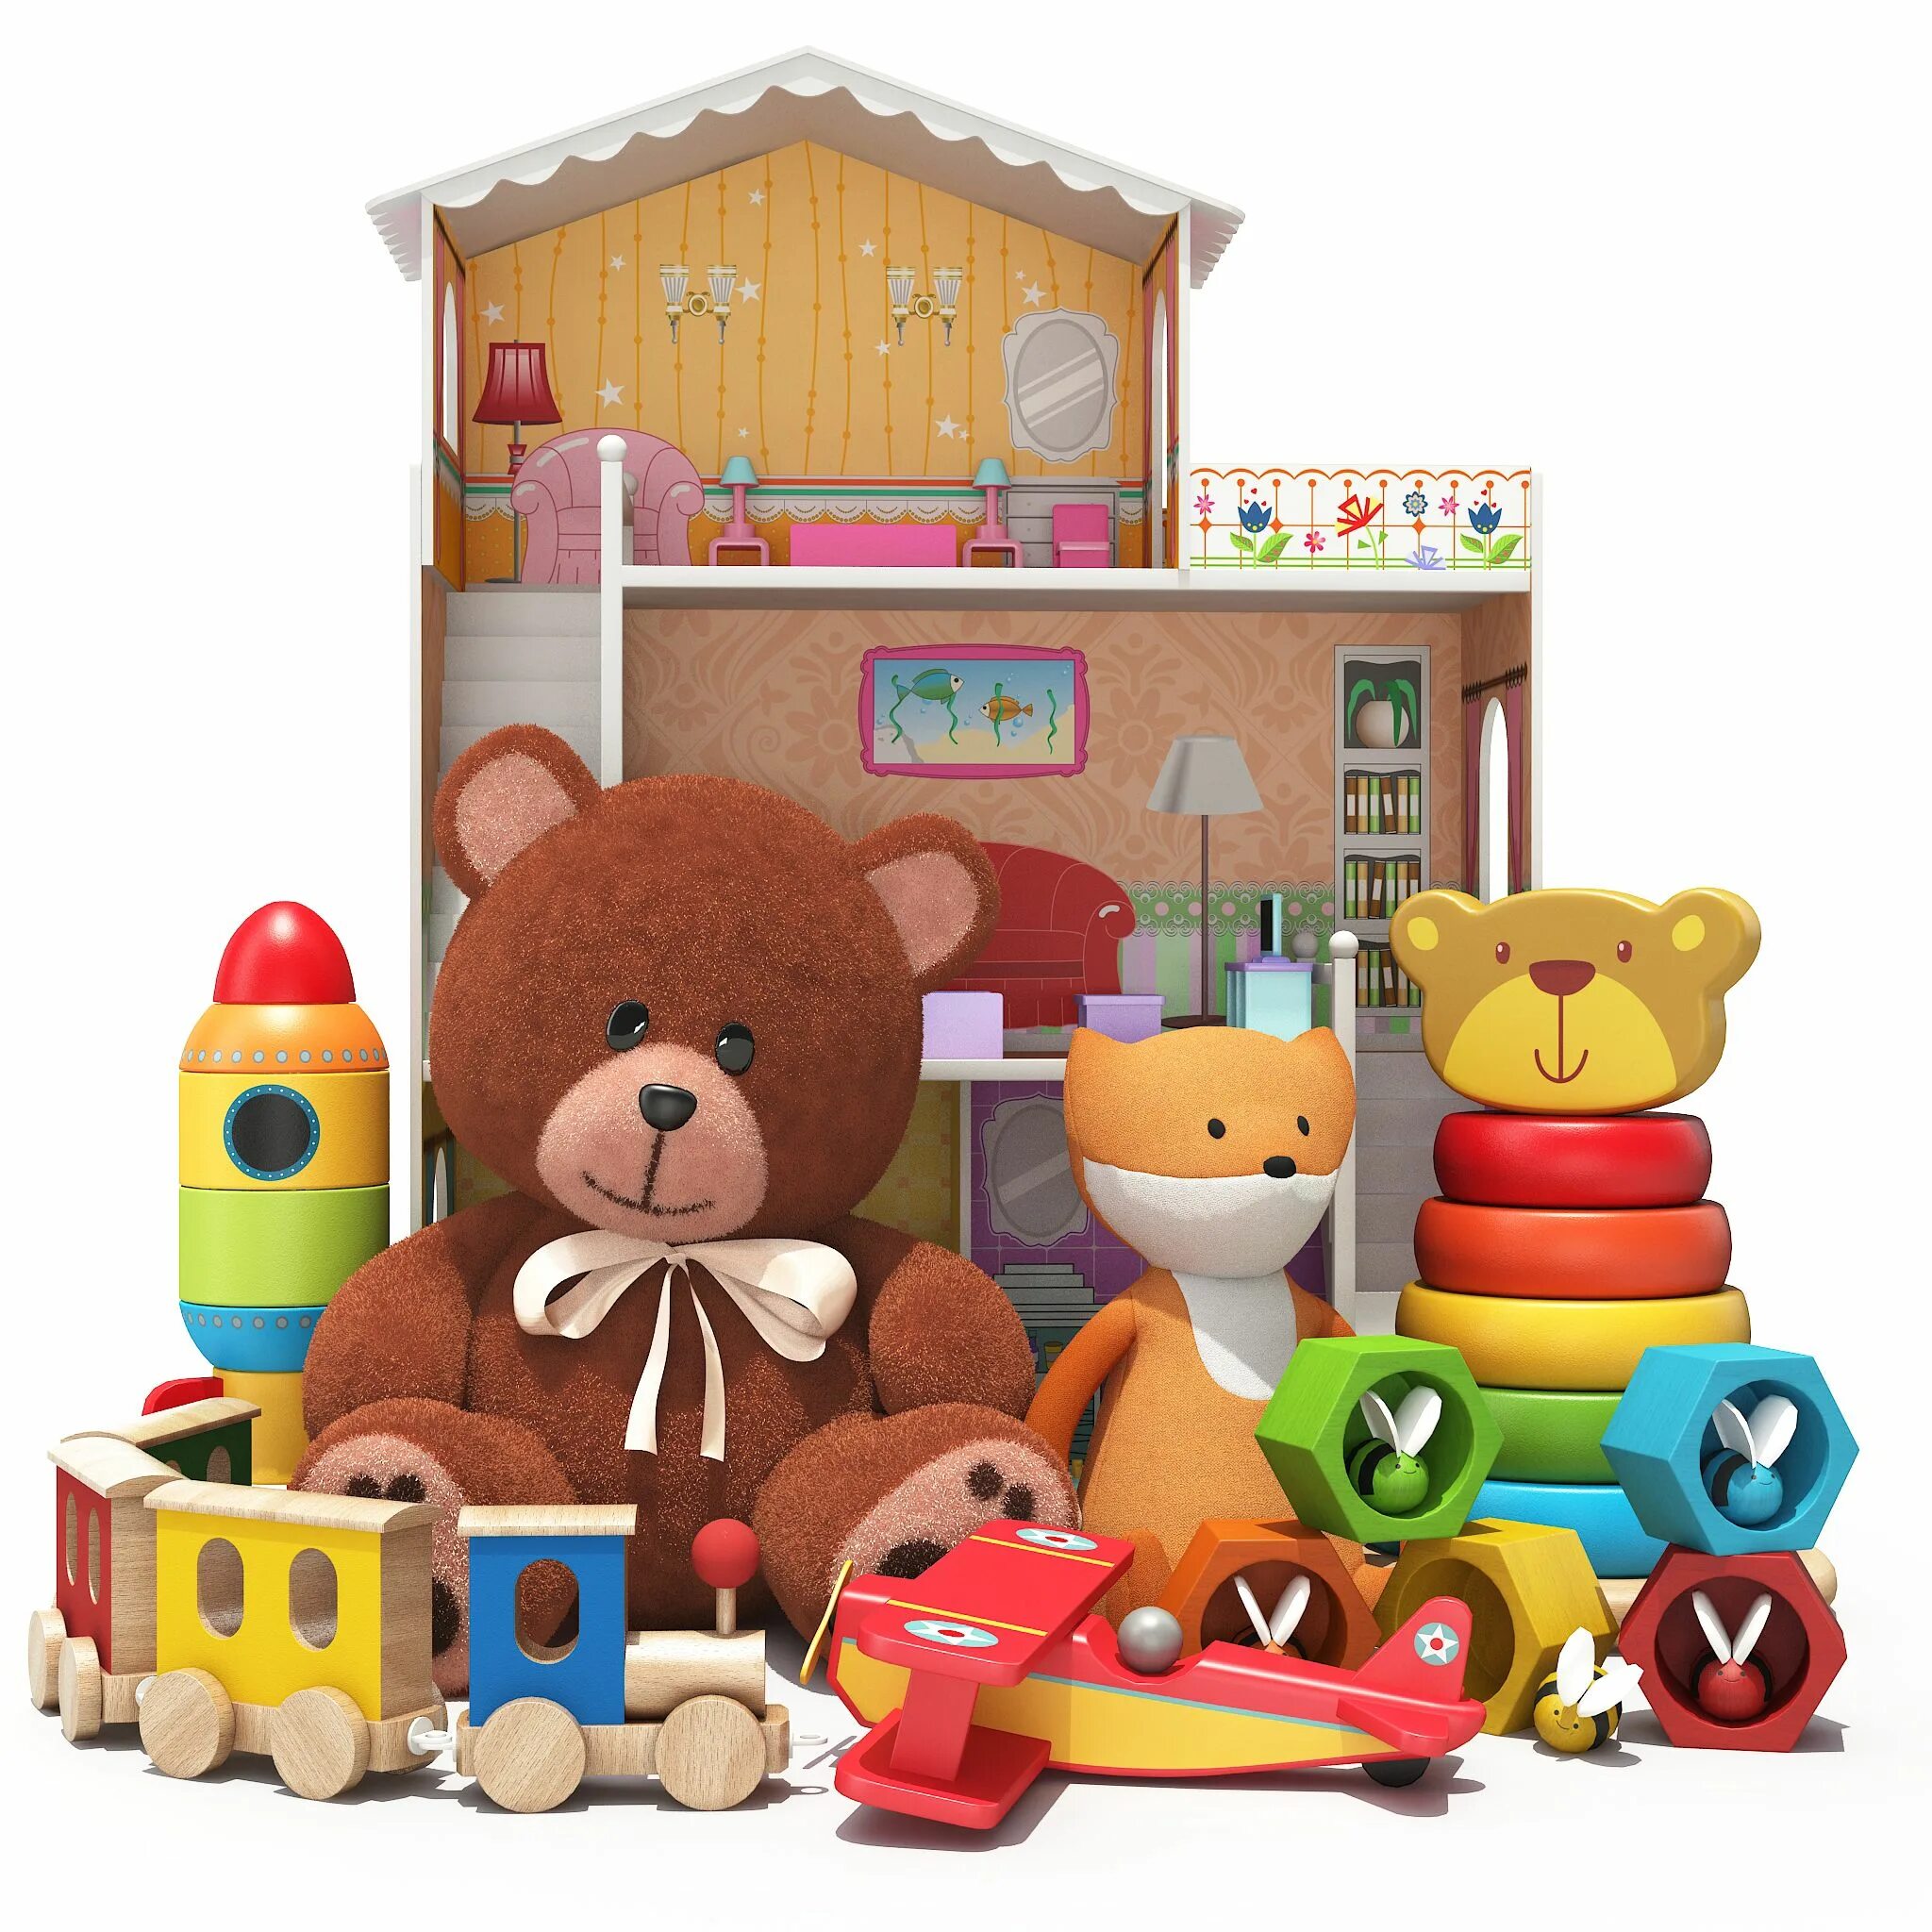 D toys. Коллекция 3д игрушки для детей. 3d игрушки растений и игрушек на белом фоне. Игрушки блоптоп на белом фоне. 3d Toy.